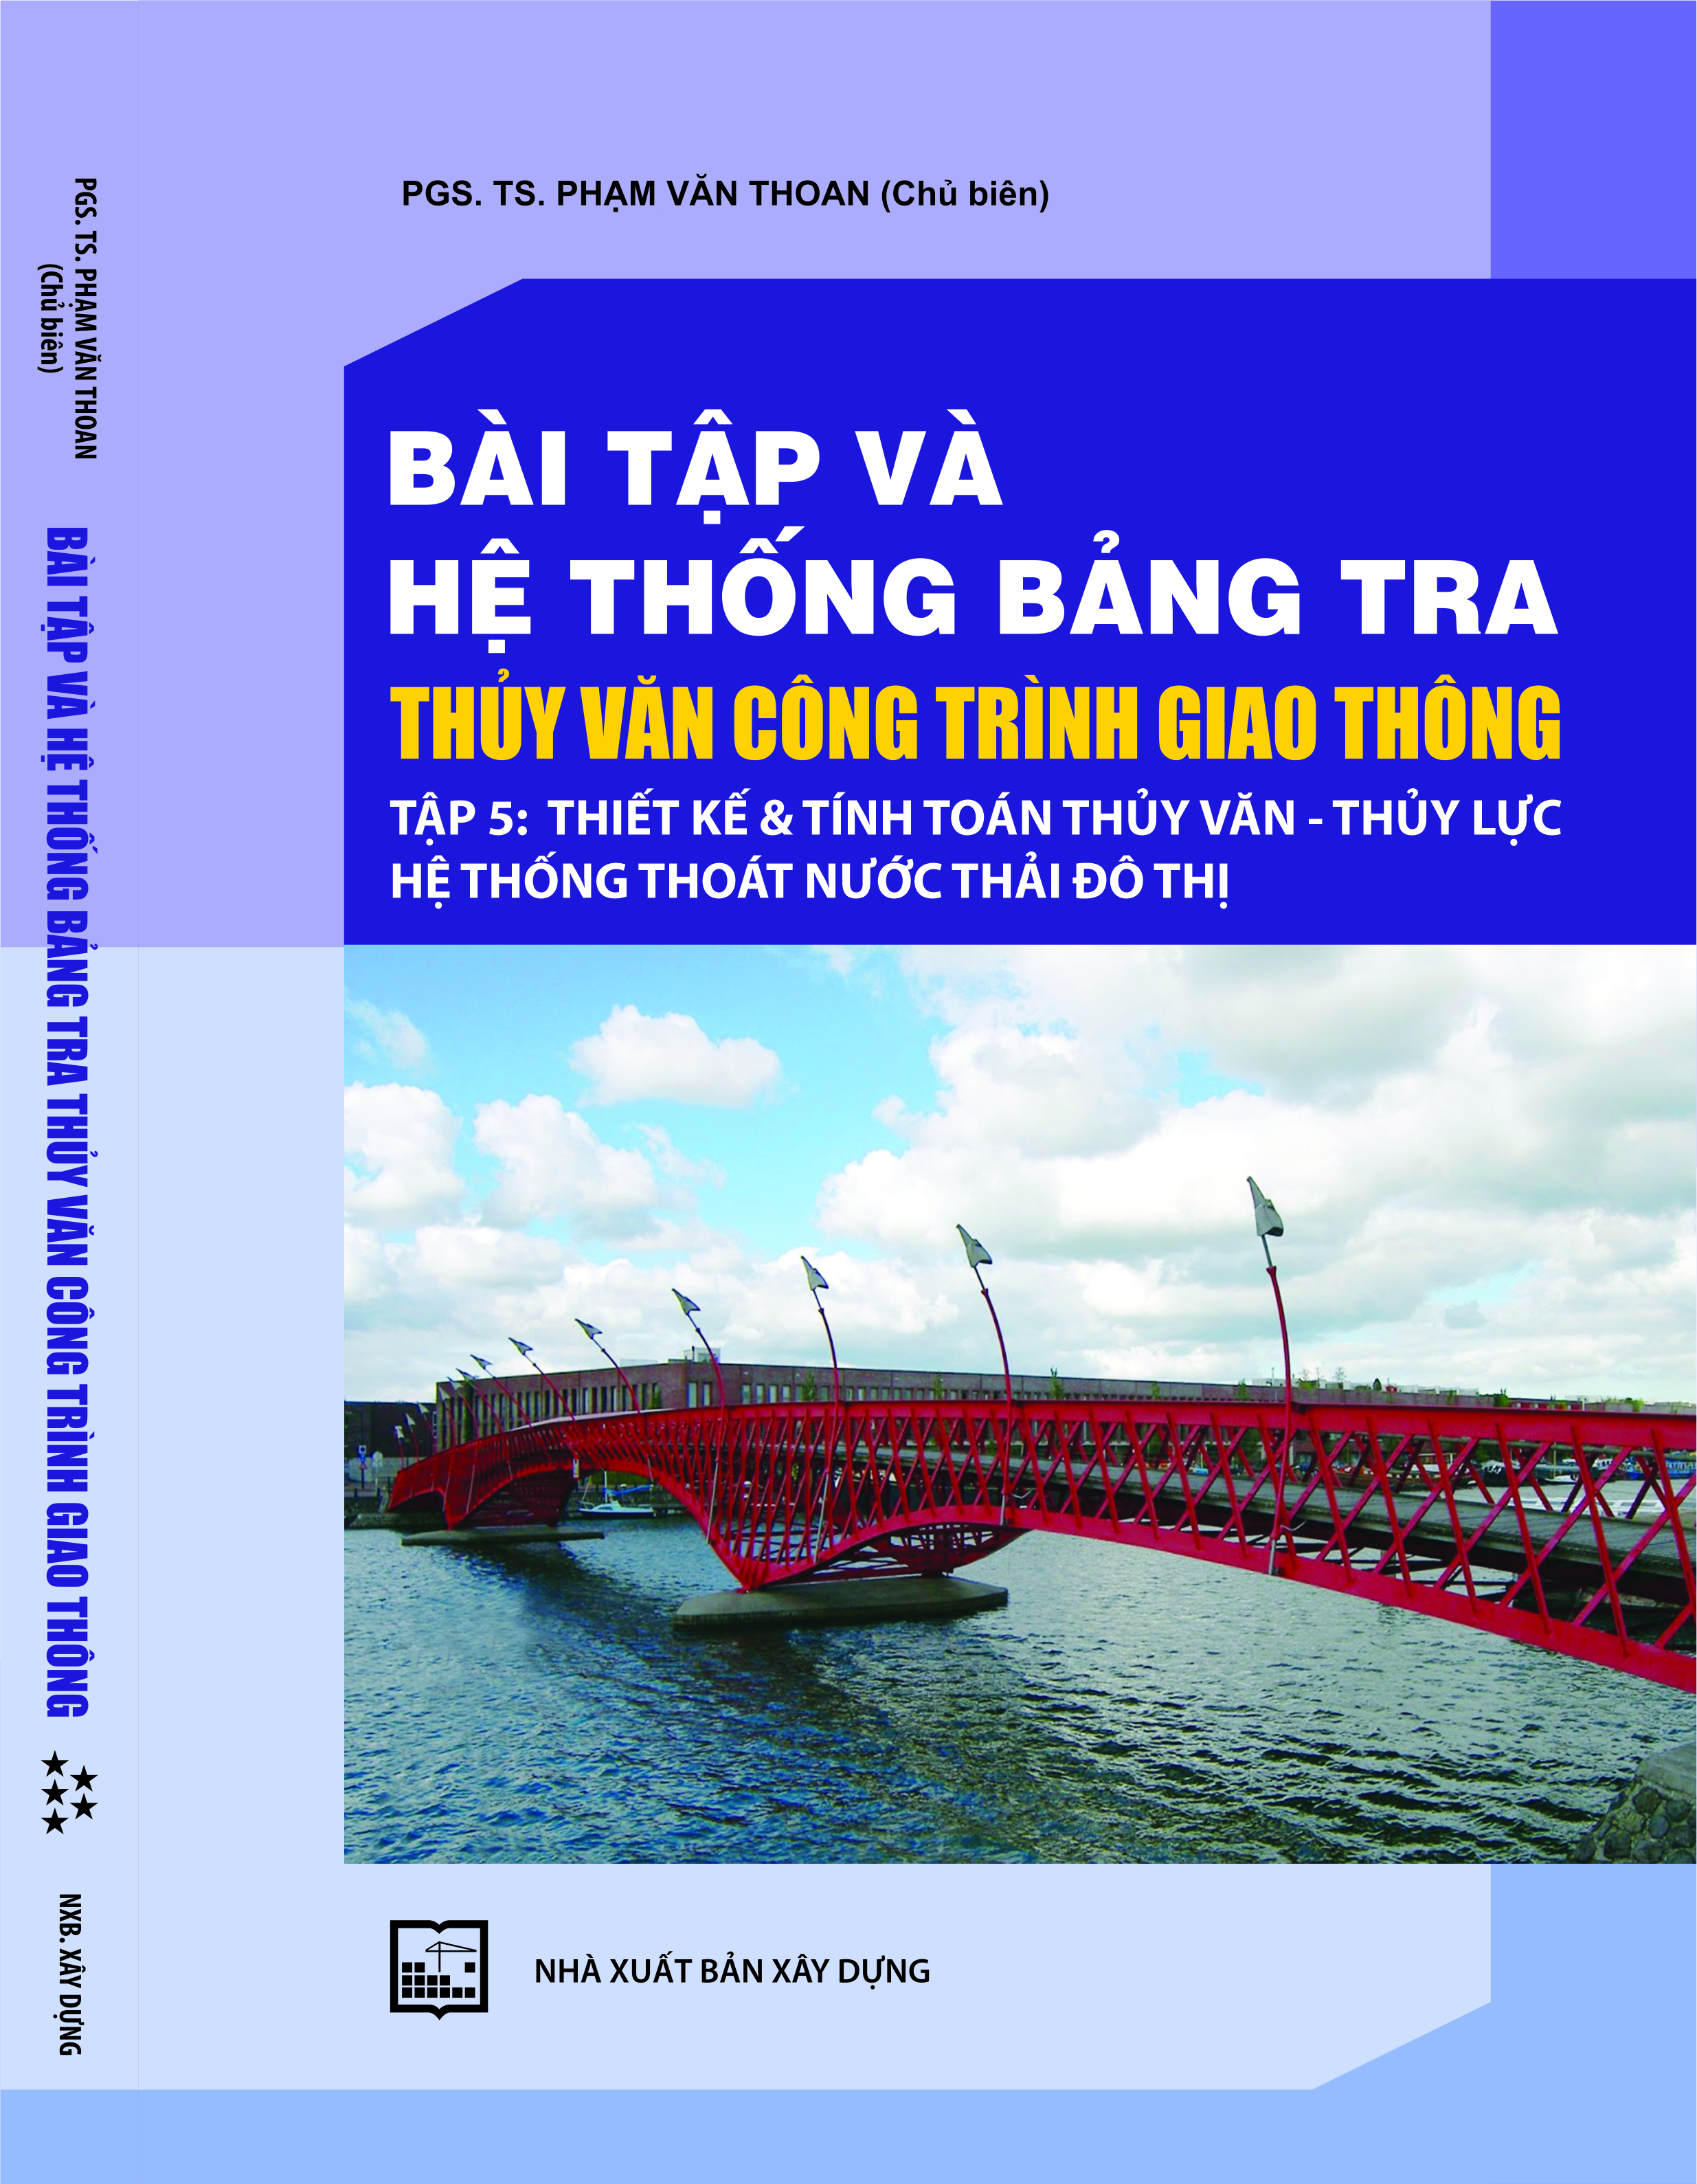 Bài tập và hệ thống bảng tra thủy văn công trình giao thông - Tập 5: Thiết kế và tính toán thủy văn - thủy lực hệ thống thoát nước đô thị